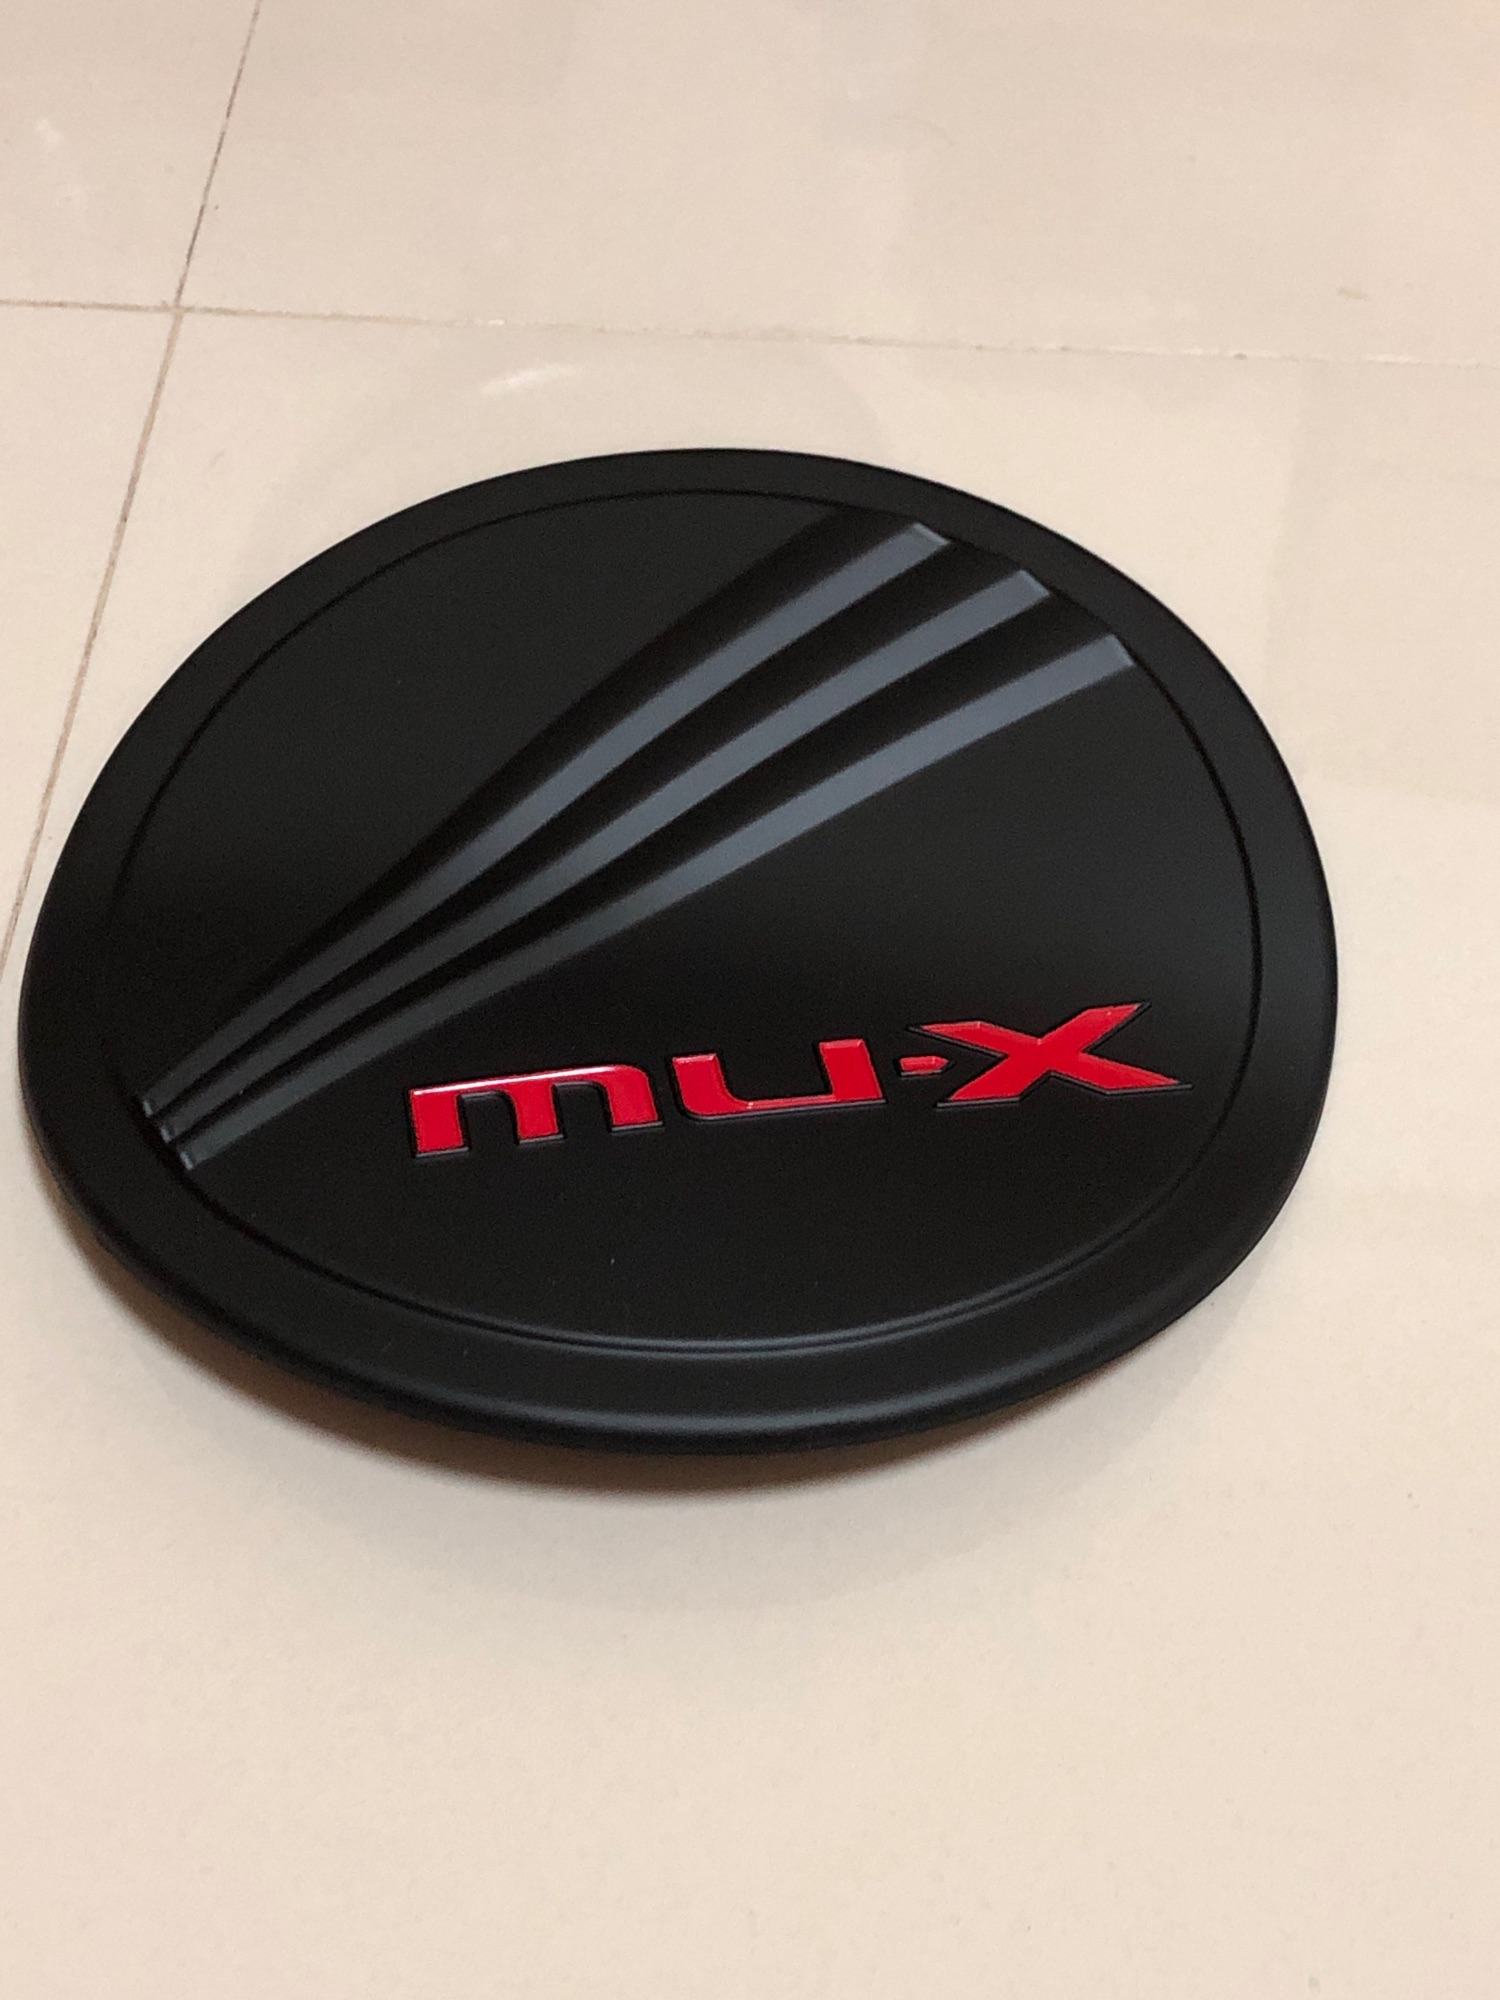 ฝาถัง น้ำมัน MU-X  สี ดำด้าน โลโก้ สีแดง ใส่กับ ปี 2013/2020